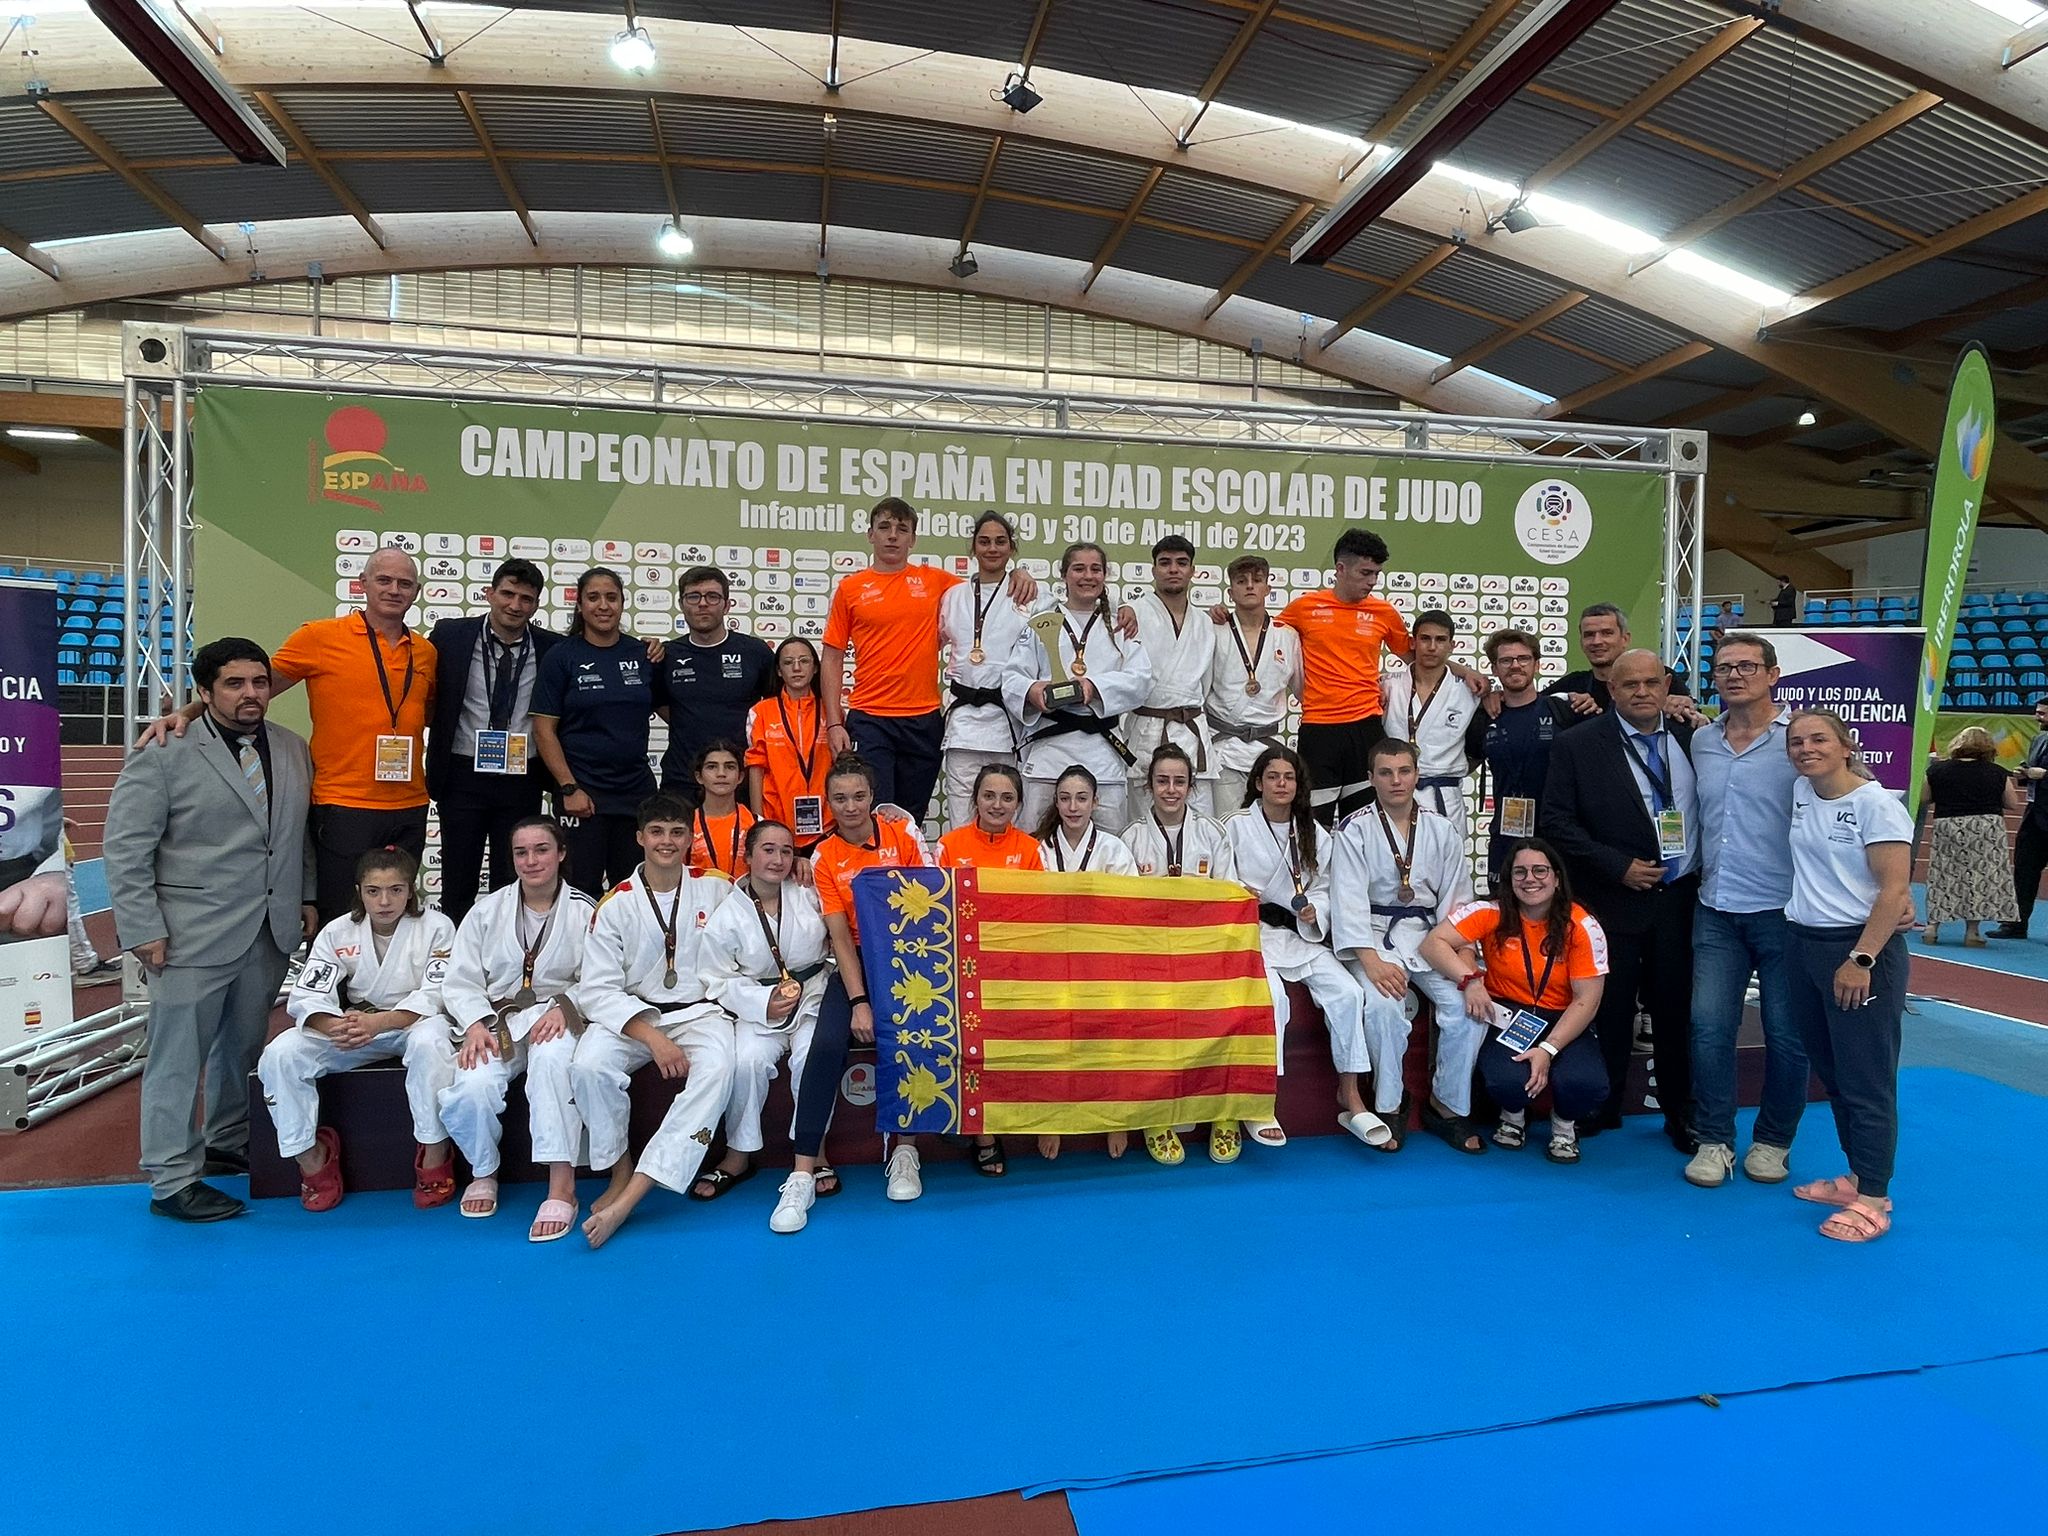 Comunidad Valenciana, campeona de españa edad escolar